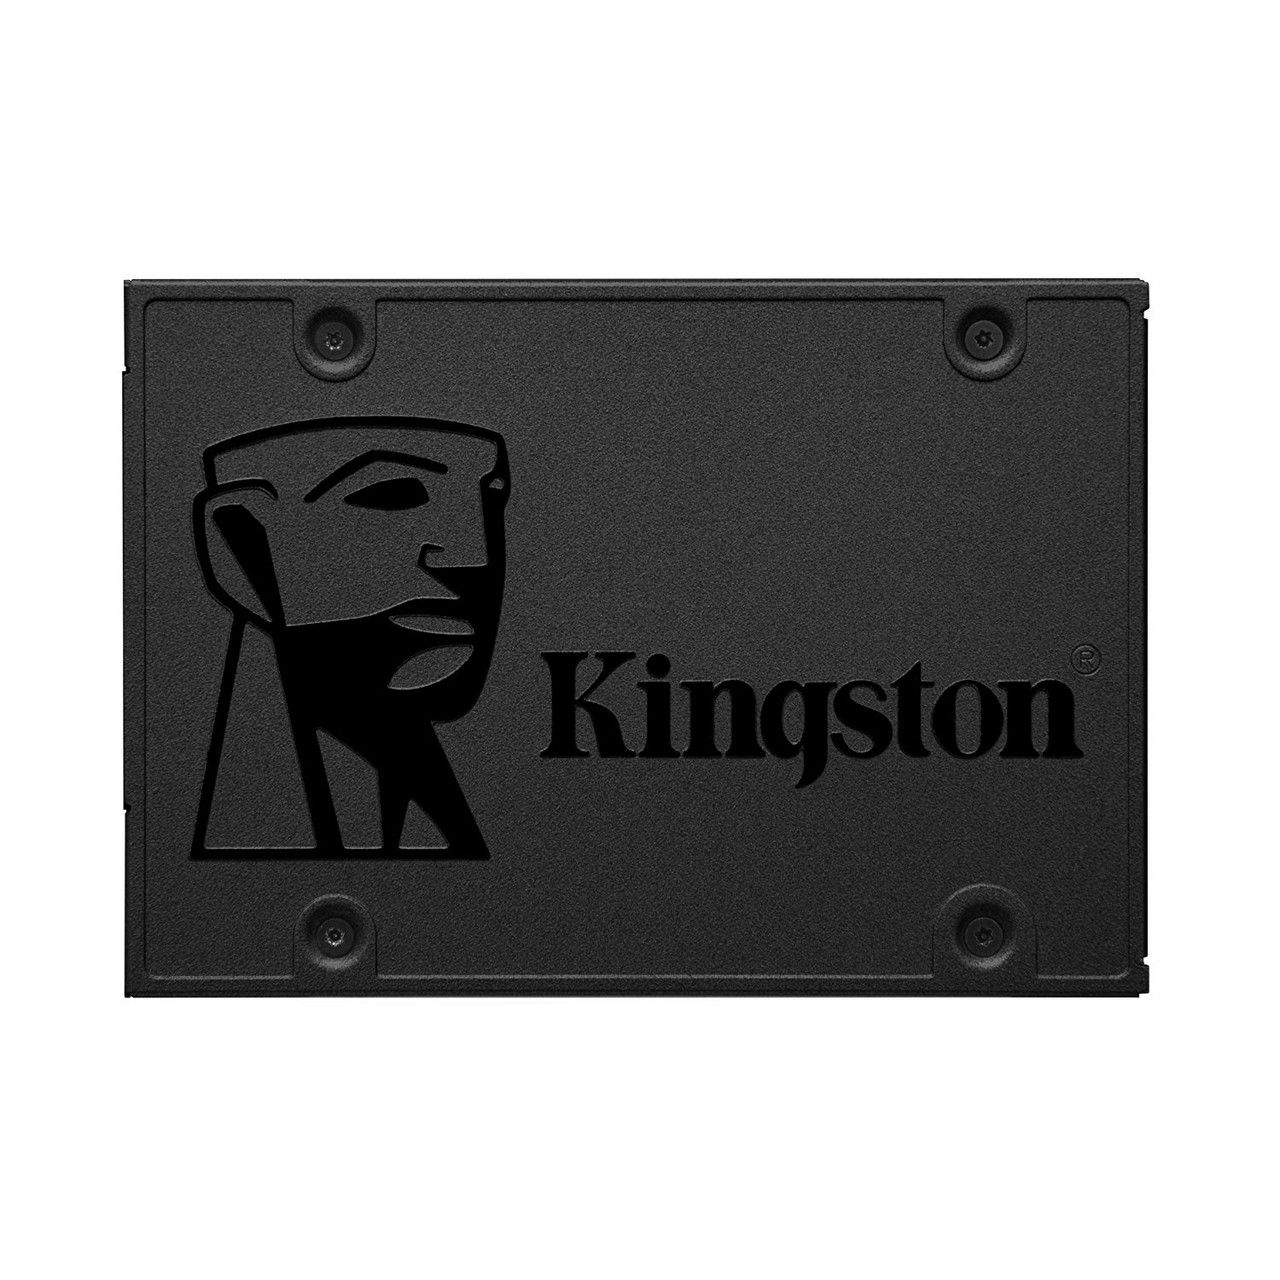 Kingston SSD 480GB A400 Sata 3 480GB 2.5″ Internal SSD SA400S37/480G Accessories 4